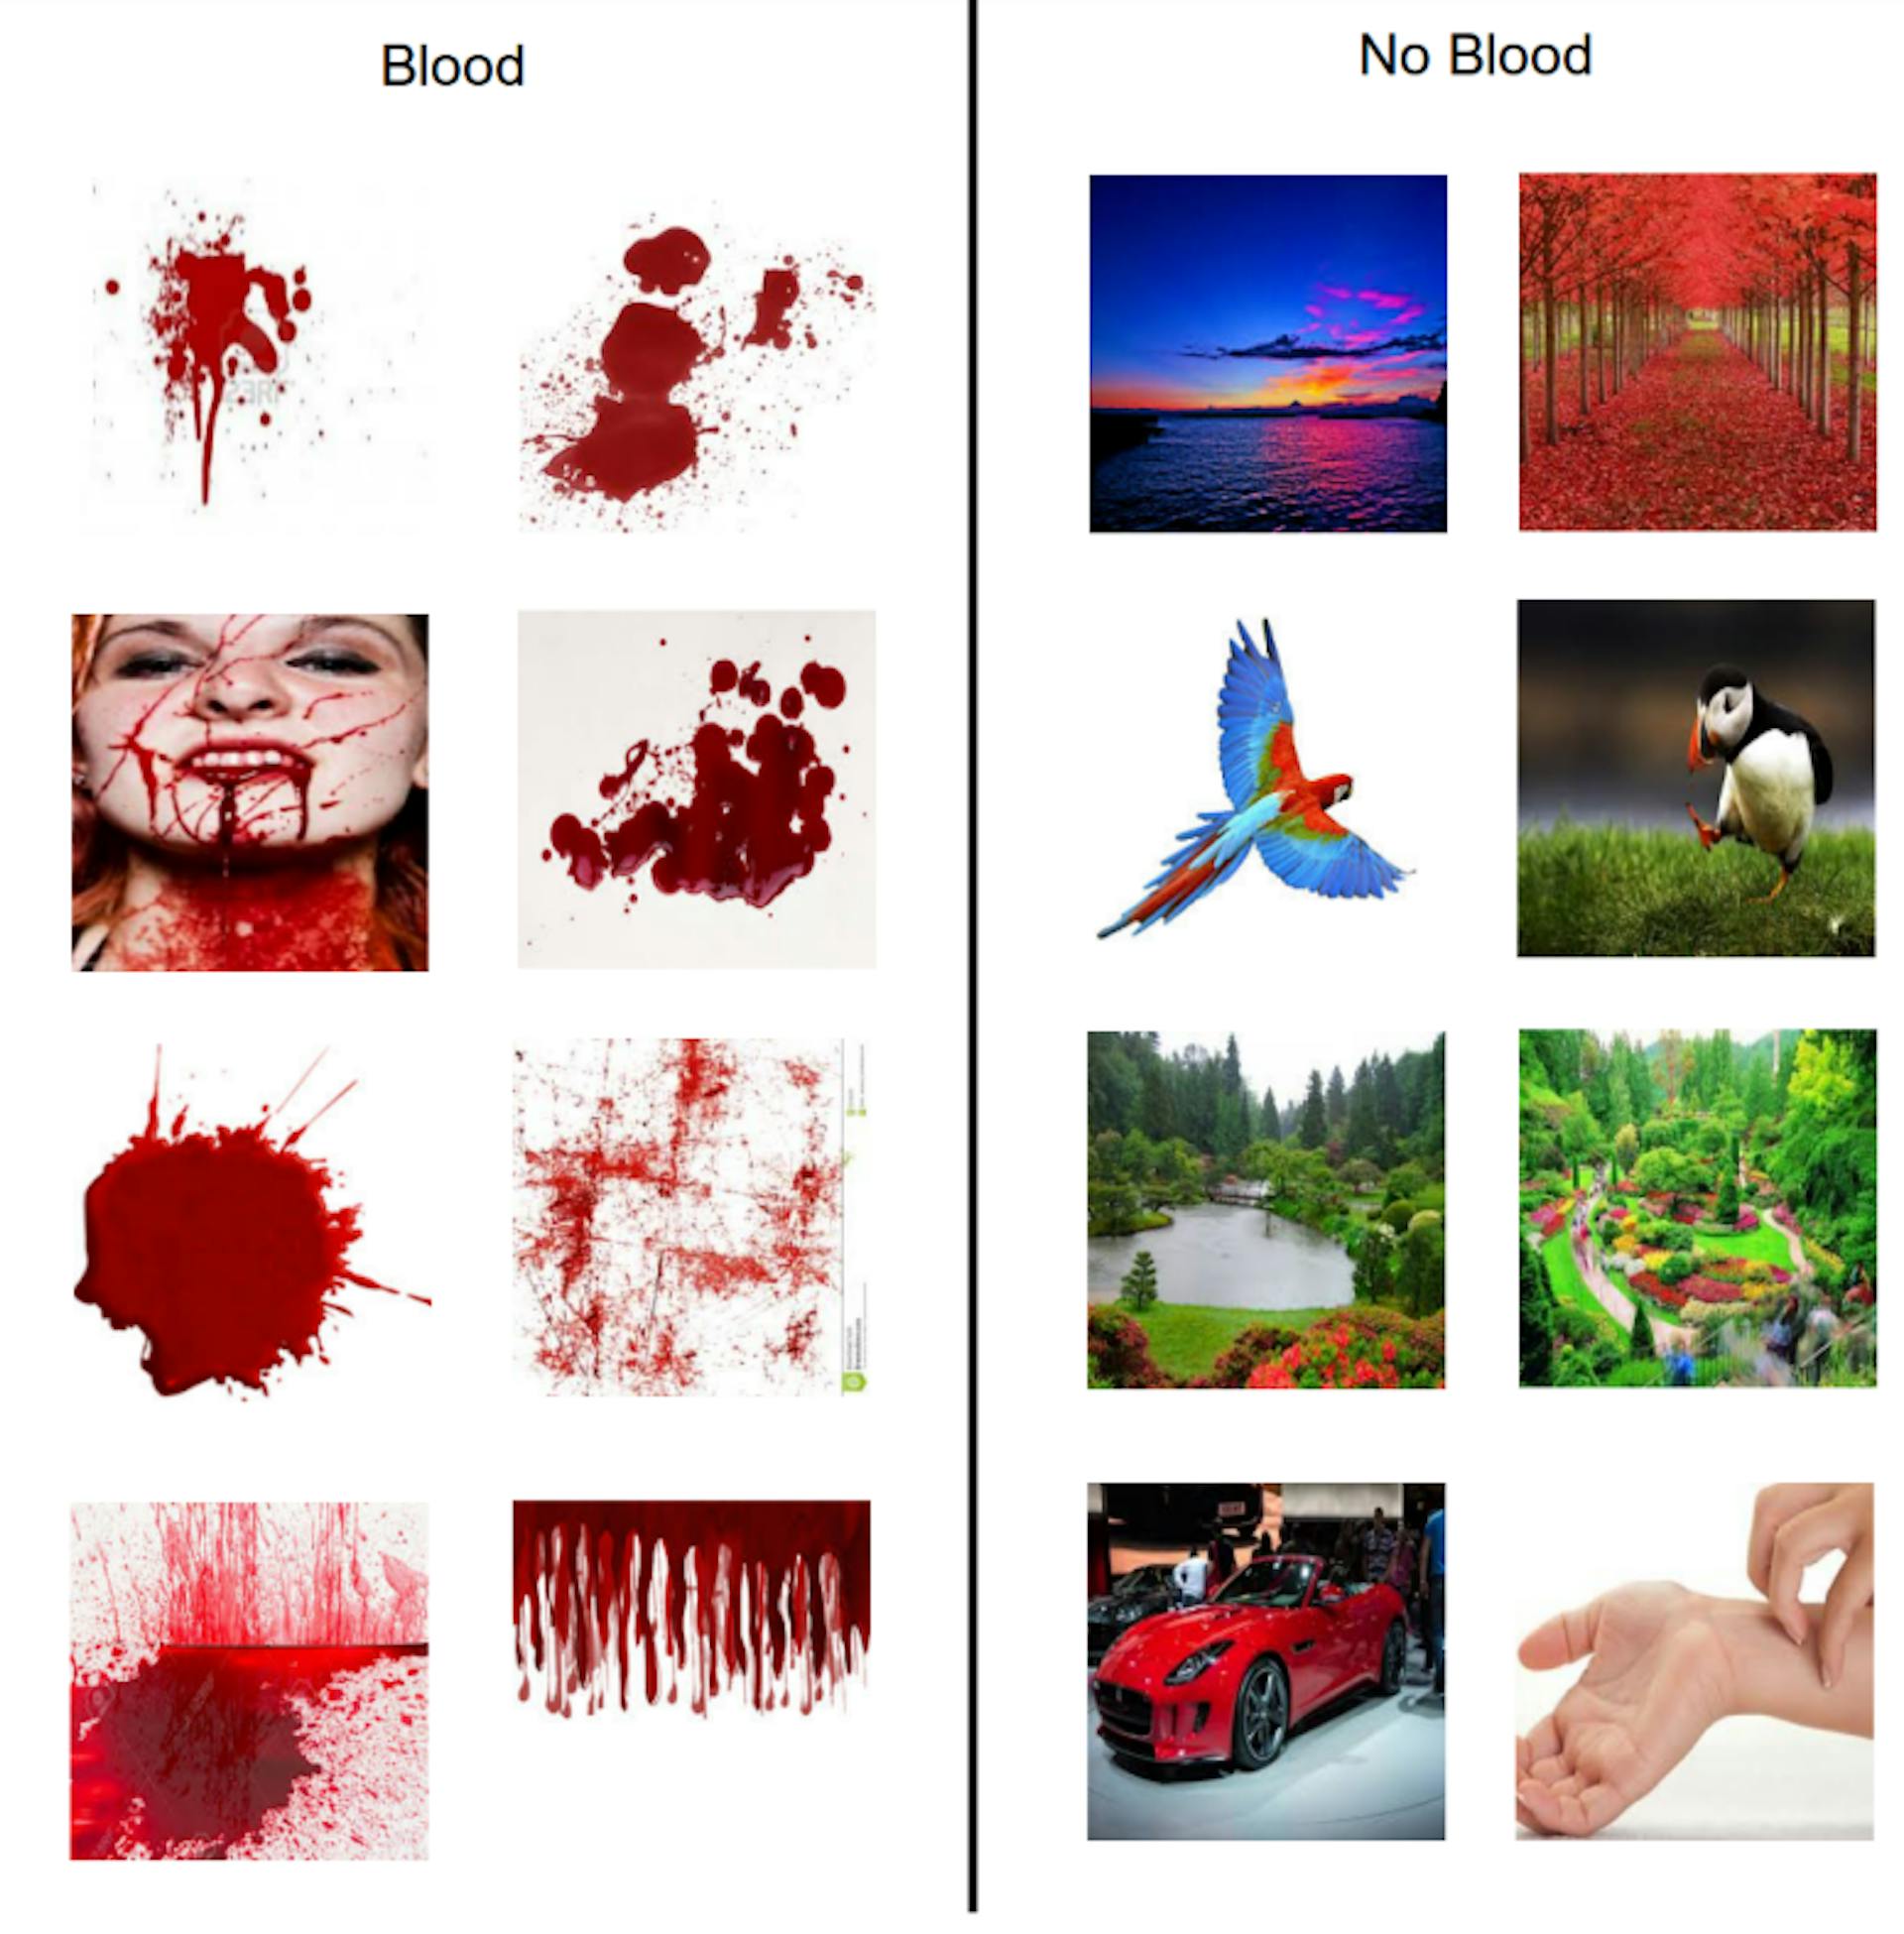 Hình 3.3: Hình hiển thị các hình ảnh mẫu được tải xuống từ Google để tạo mô hình máu và không phải máu.